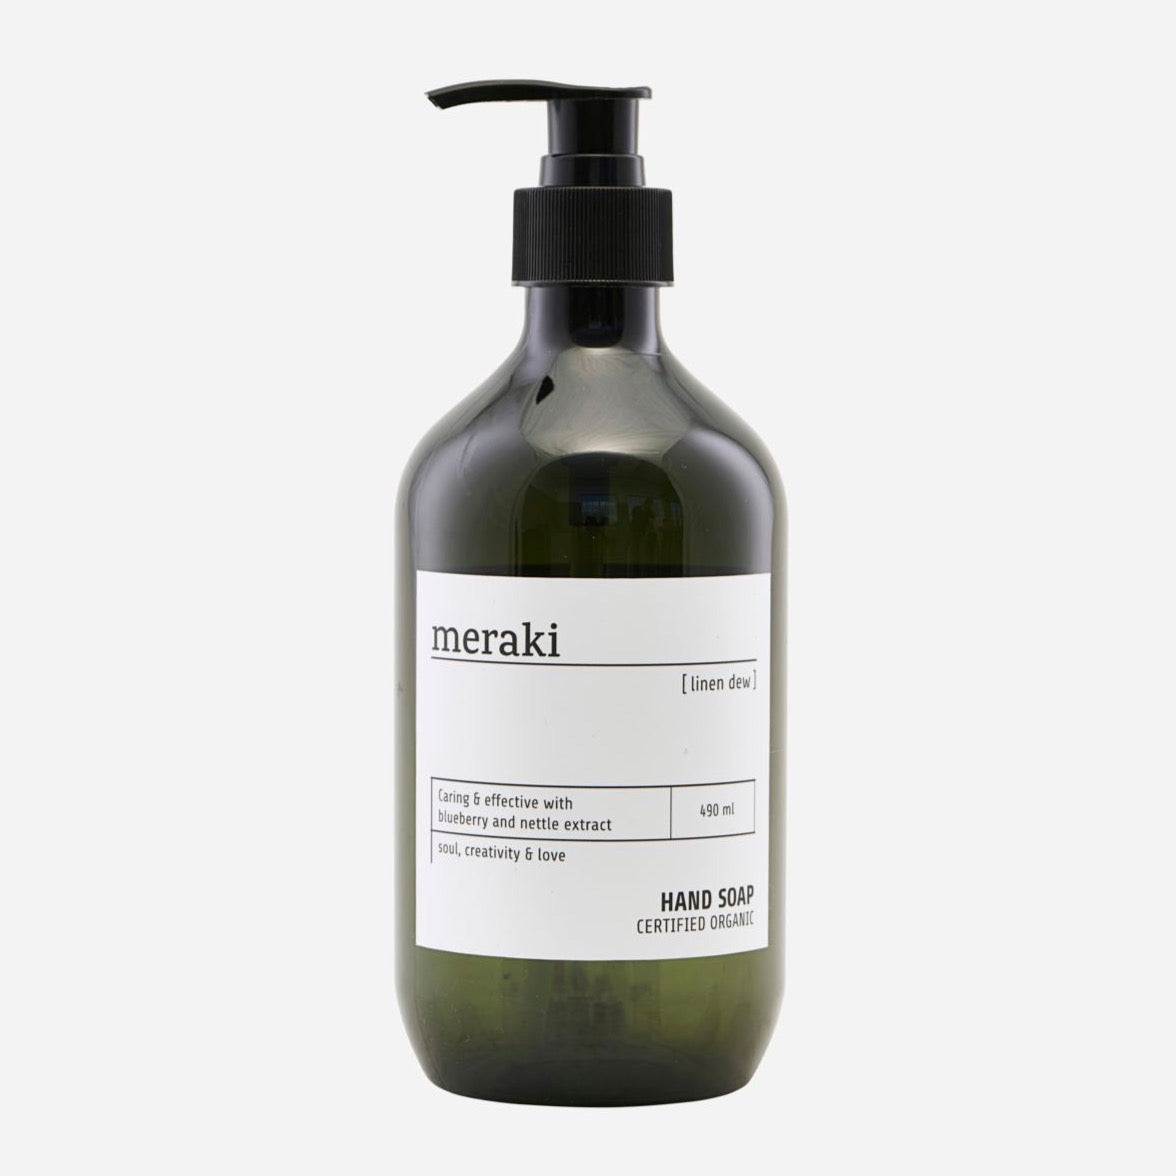 MERAKI Hand soap - Linen dew - 490ml